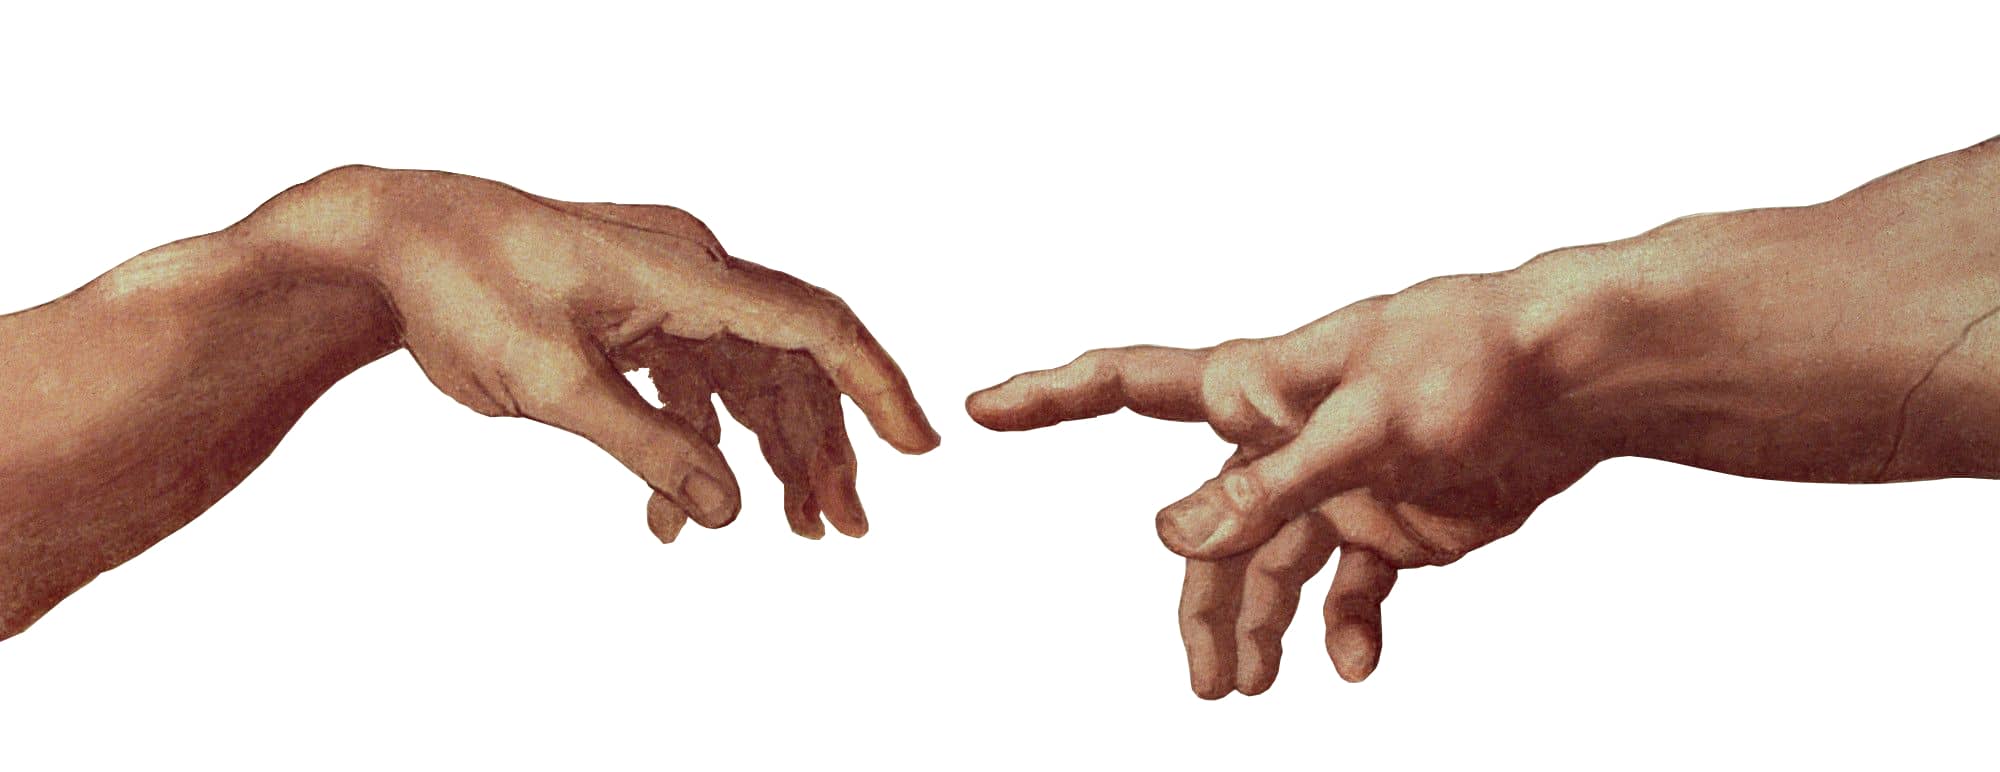 Hands of God1.0